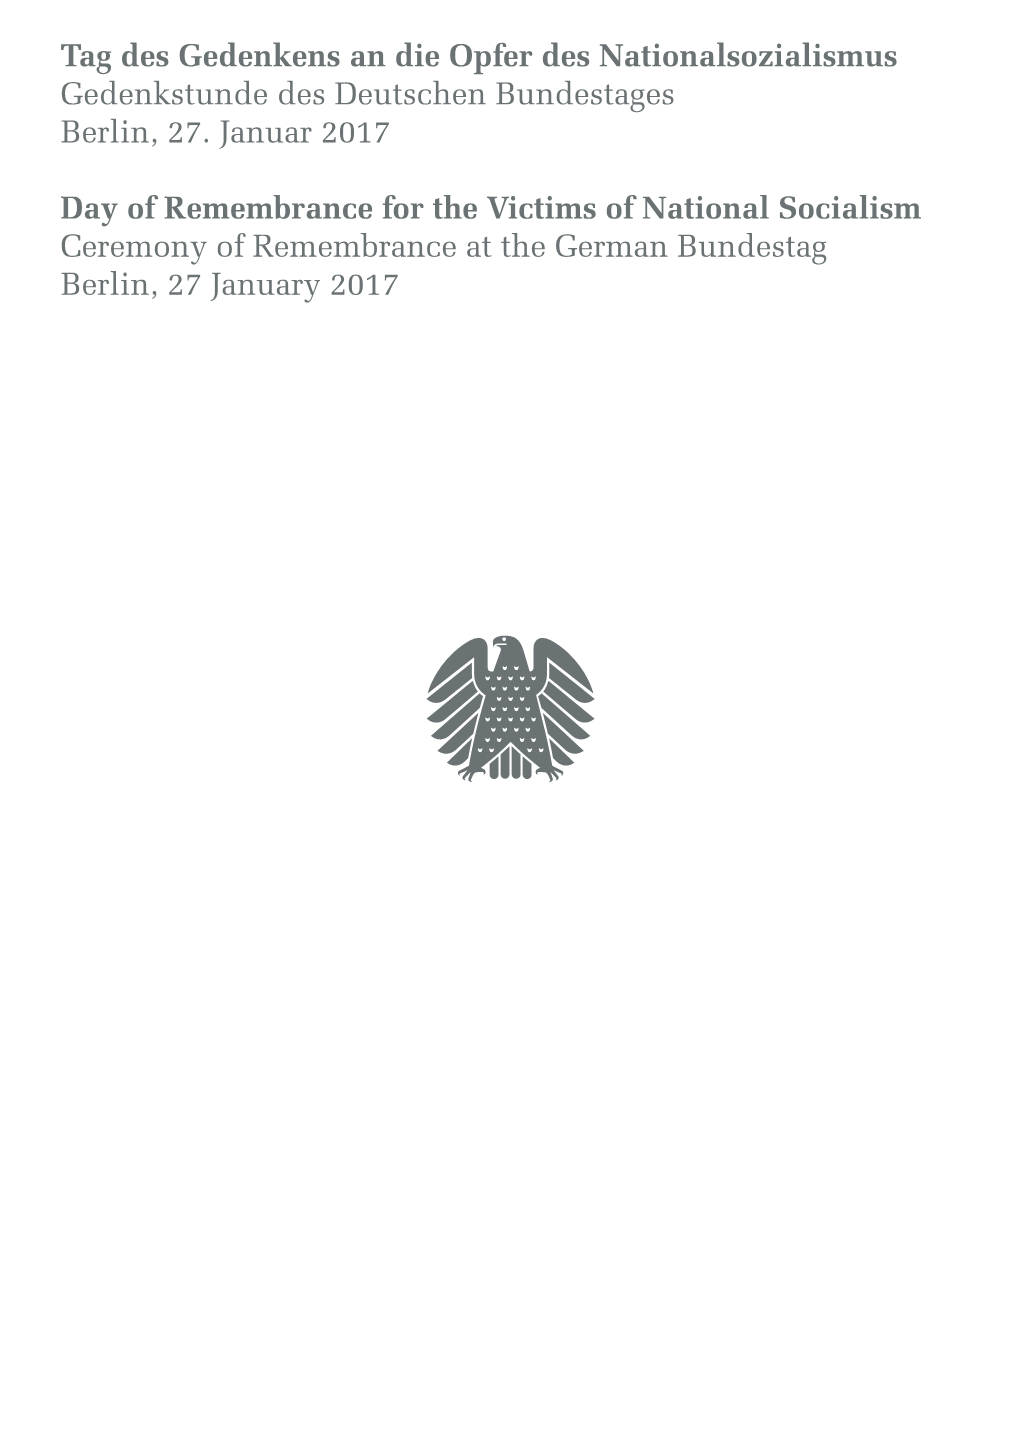 Tag Des Gedenkens an Die Opfer Des Nationalsozialismus Gedenkstunde Des Deutschen Bundestages Berlin, 27